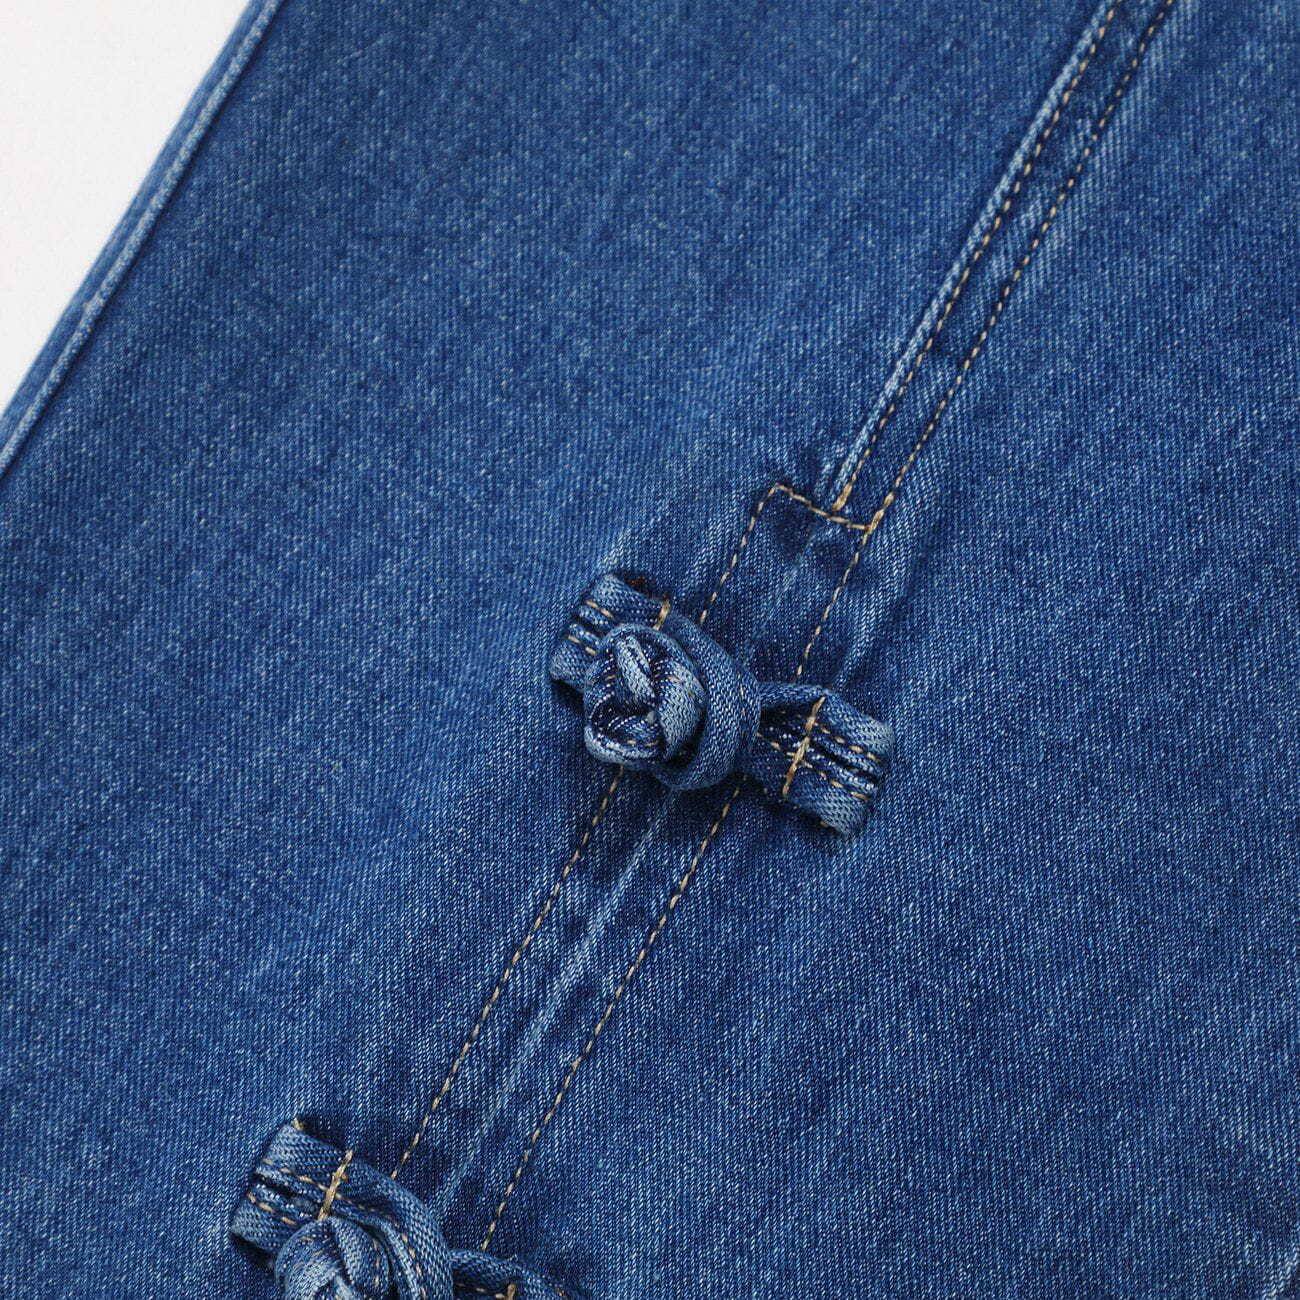 vintage buckle slit jeans edgy streetwear essential 7979